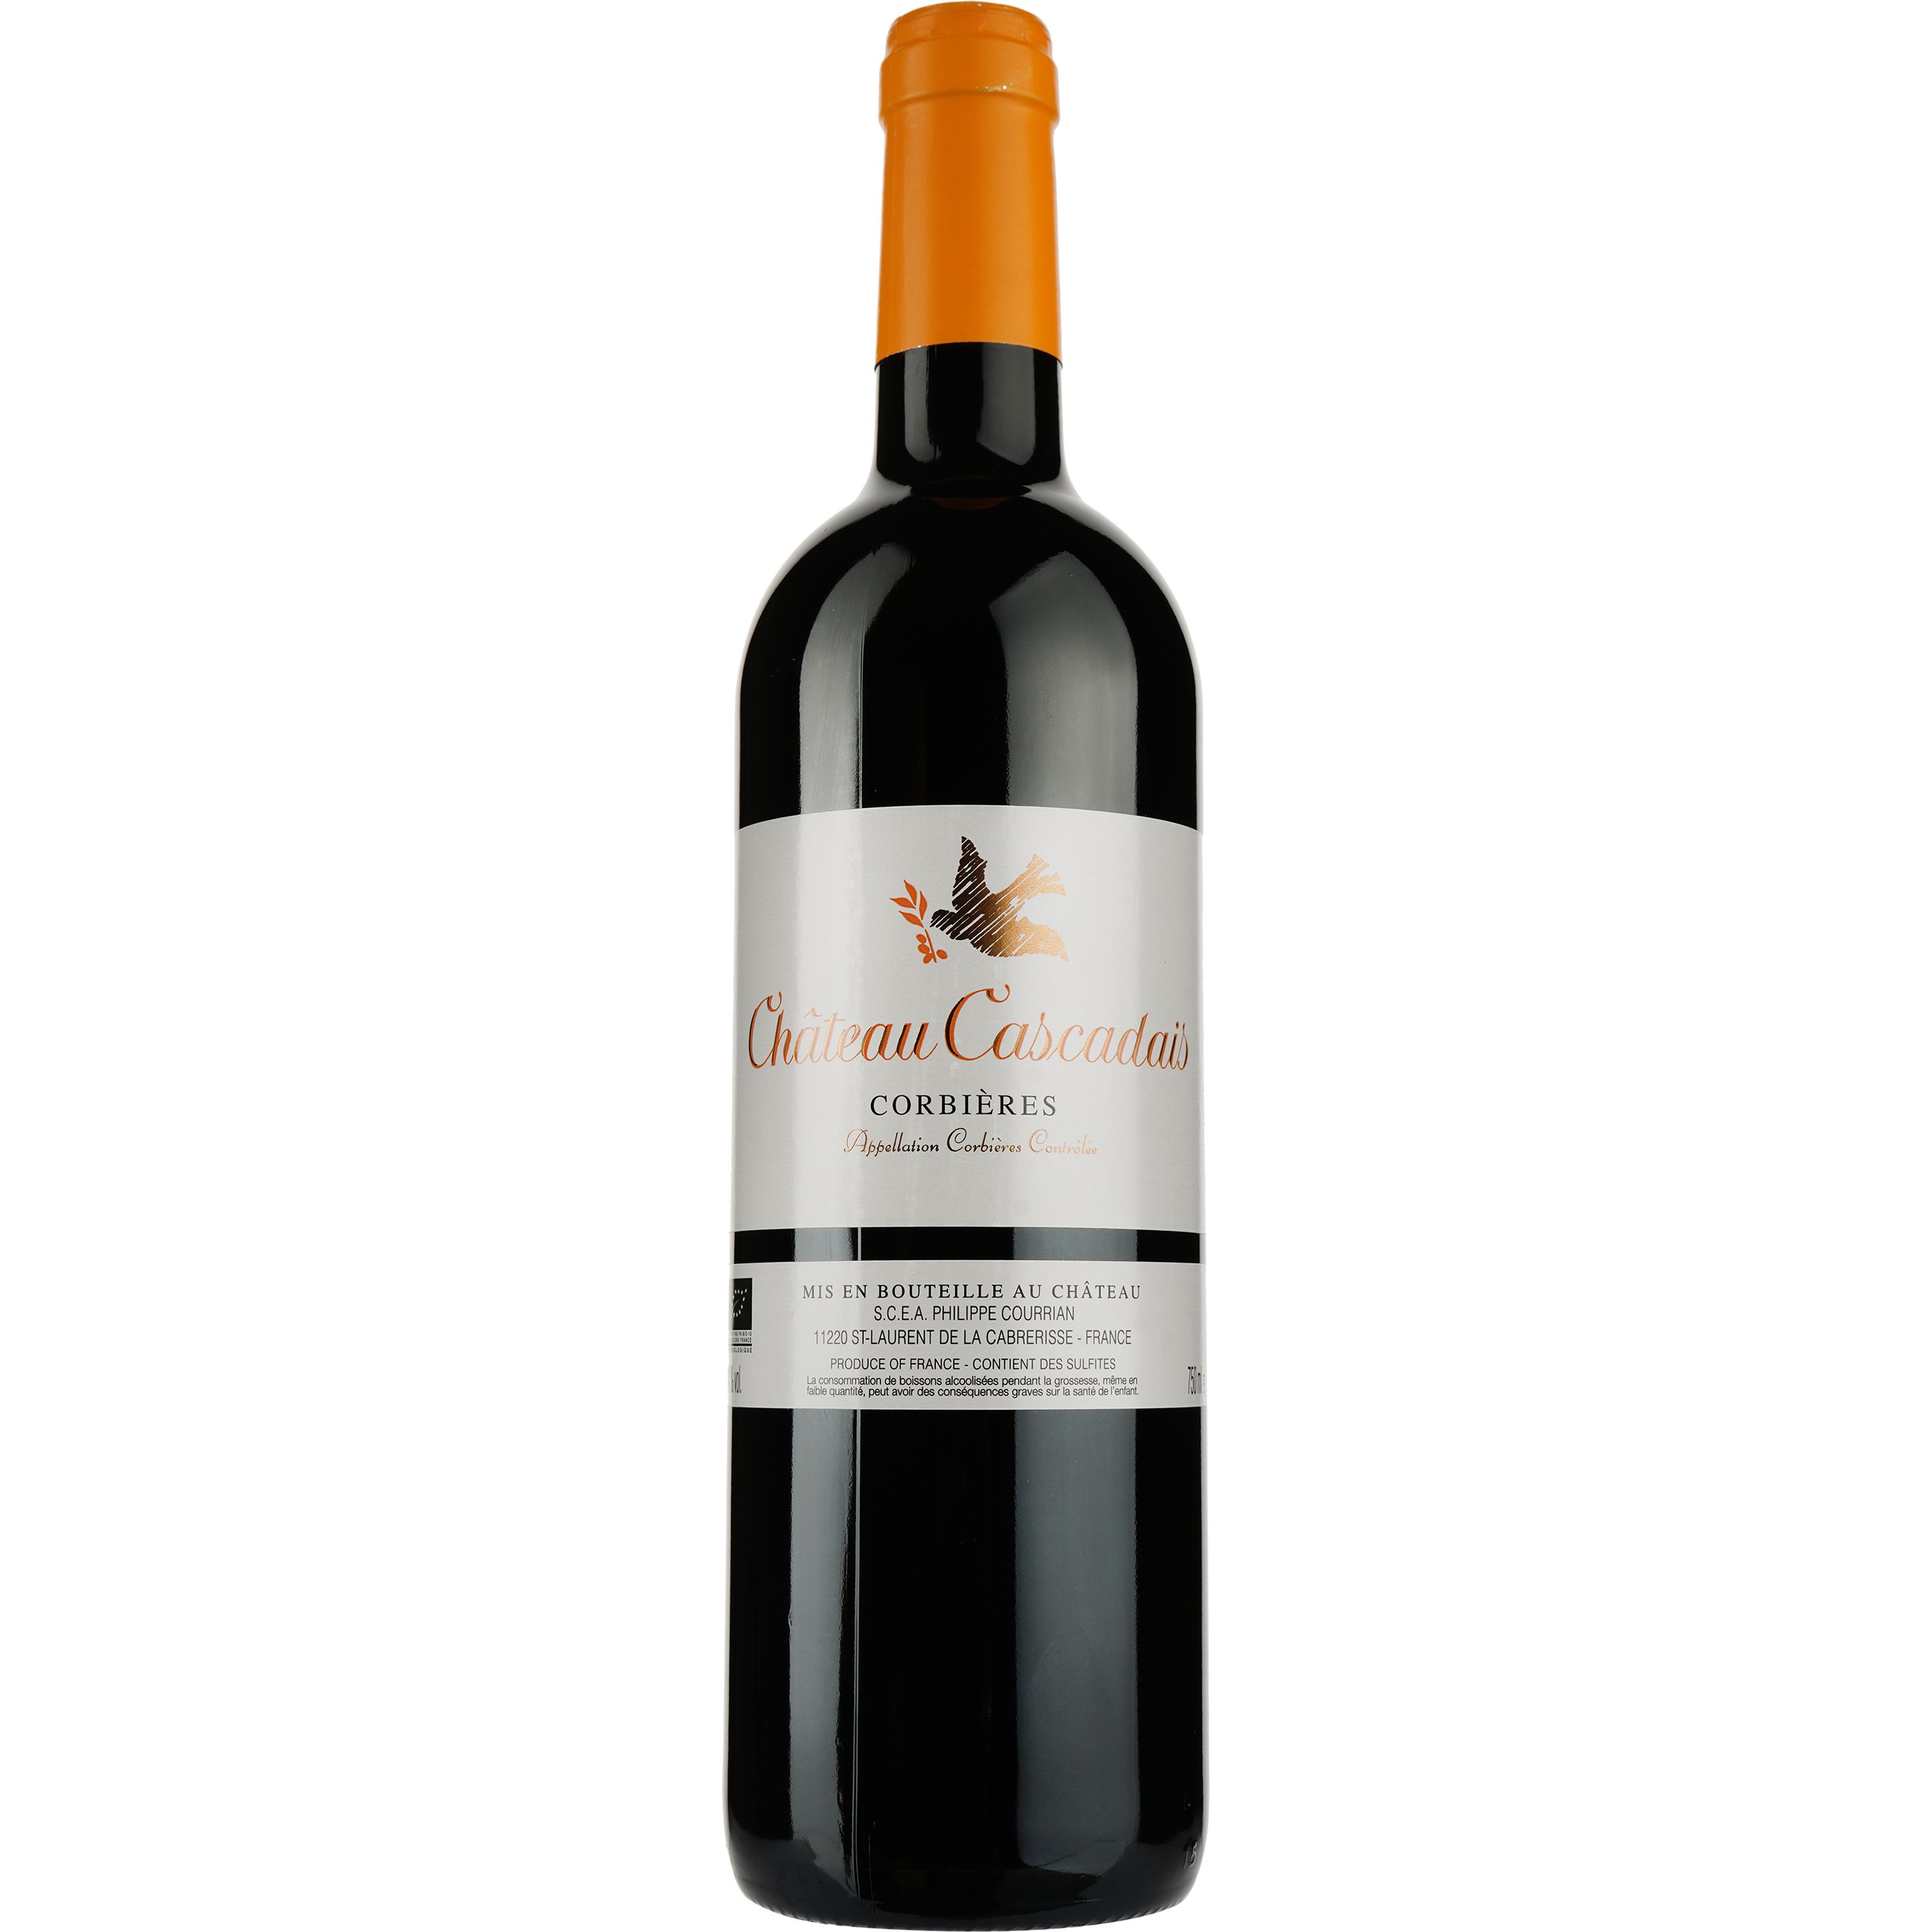 Вино Philippe Courrian Chateau Cascadais Corbieres AOC, червоне, сухе, 0,75 л - фото 1